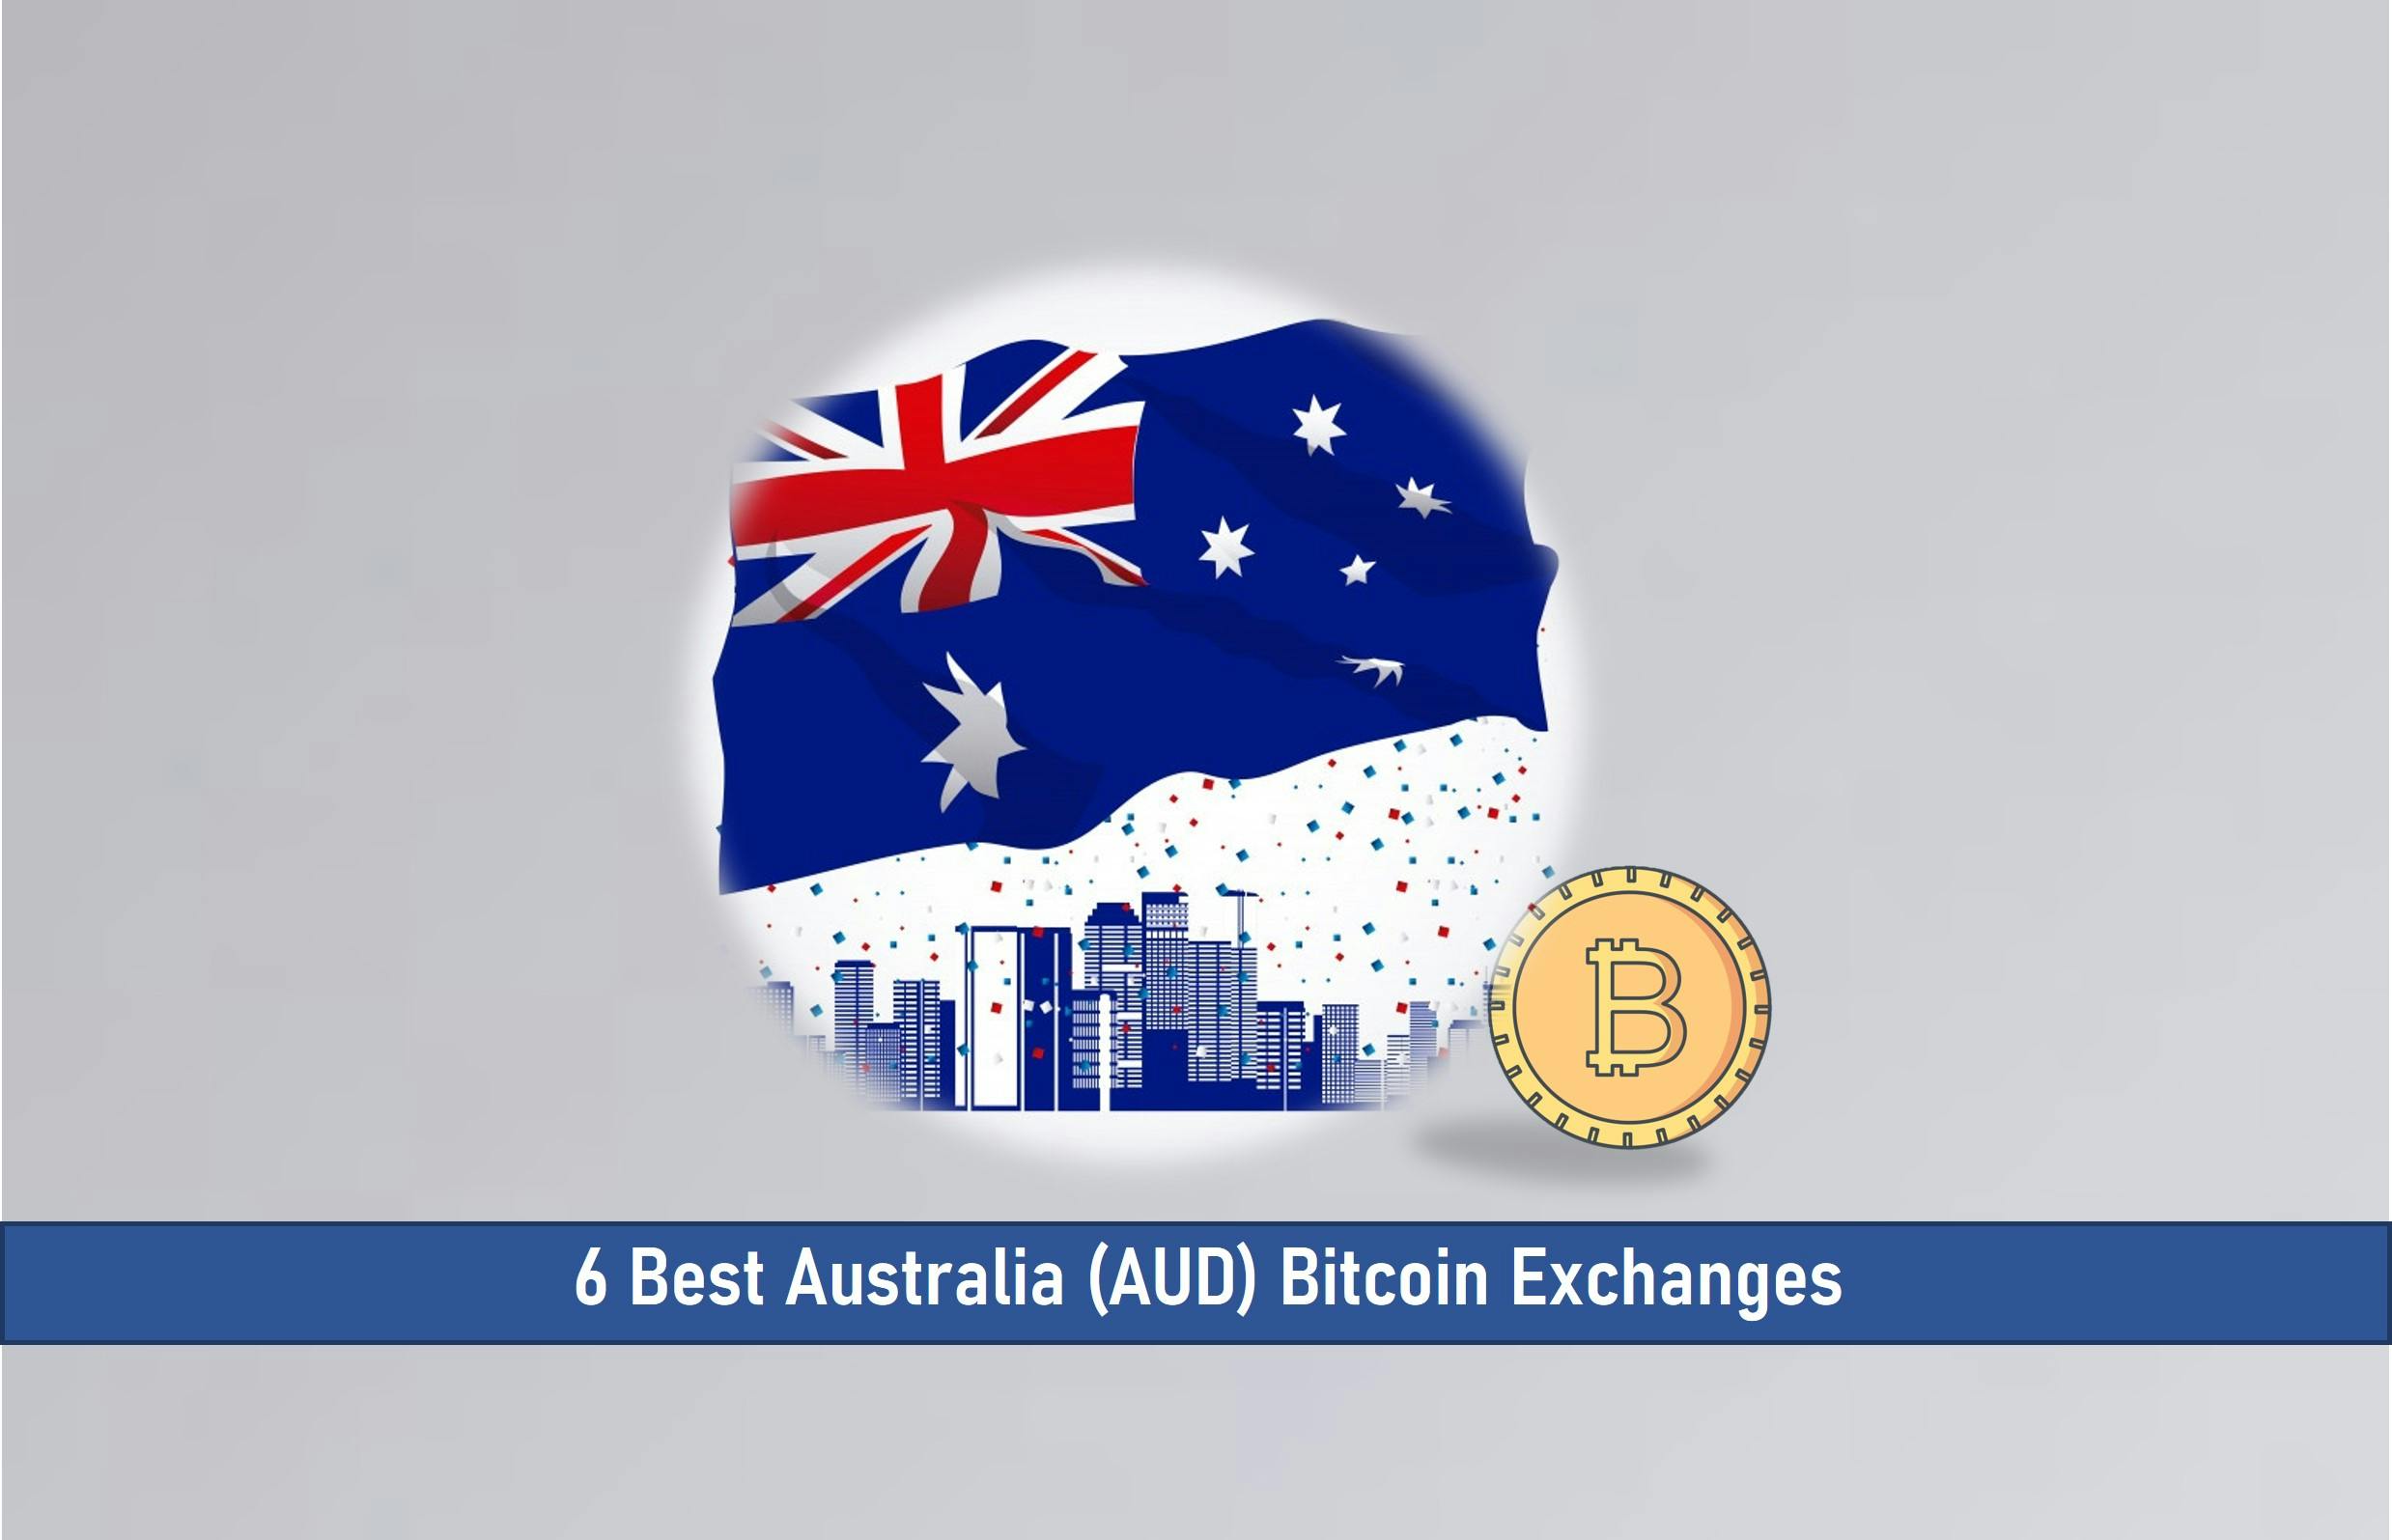 6 Best Australia Bitcoin Exchanges